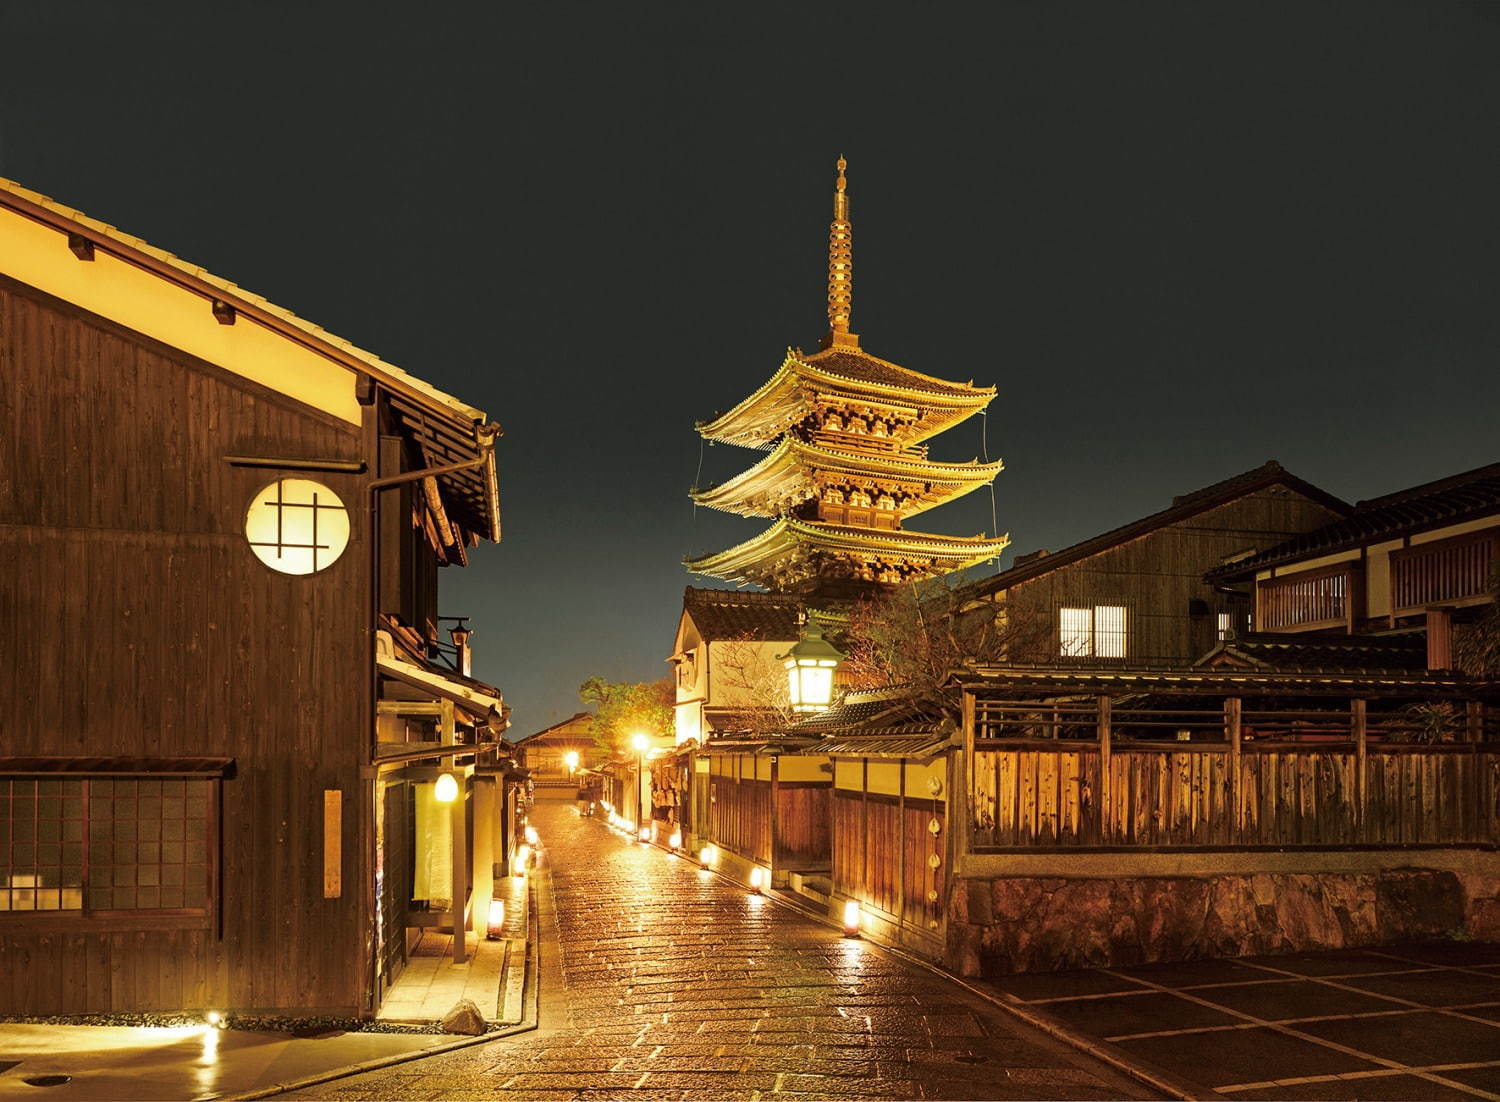 法観寺(八坂の塔)
写真提供：京都・花灯路推進協議会